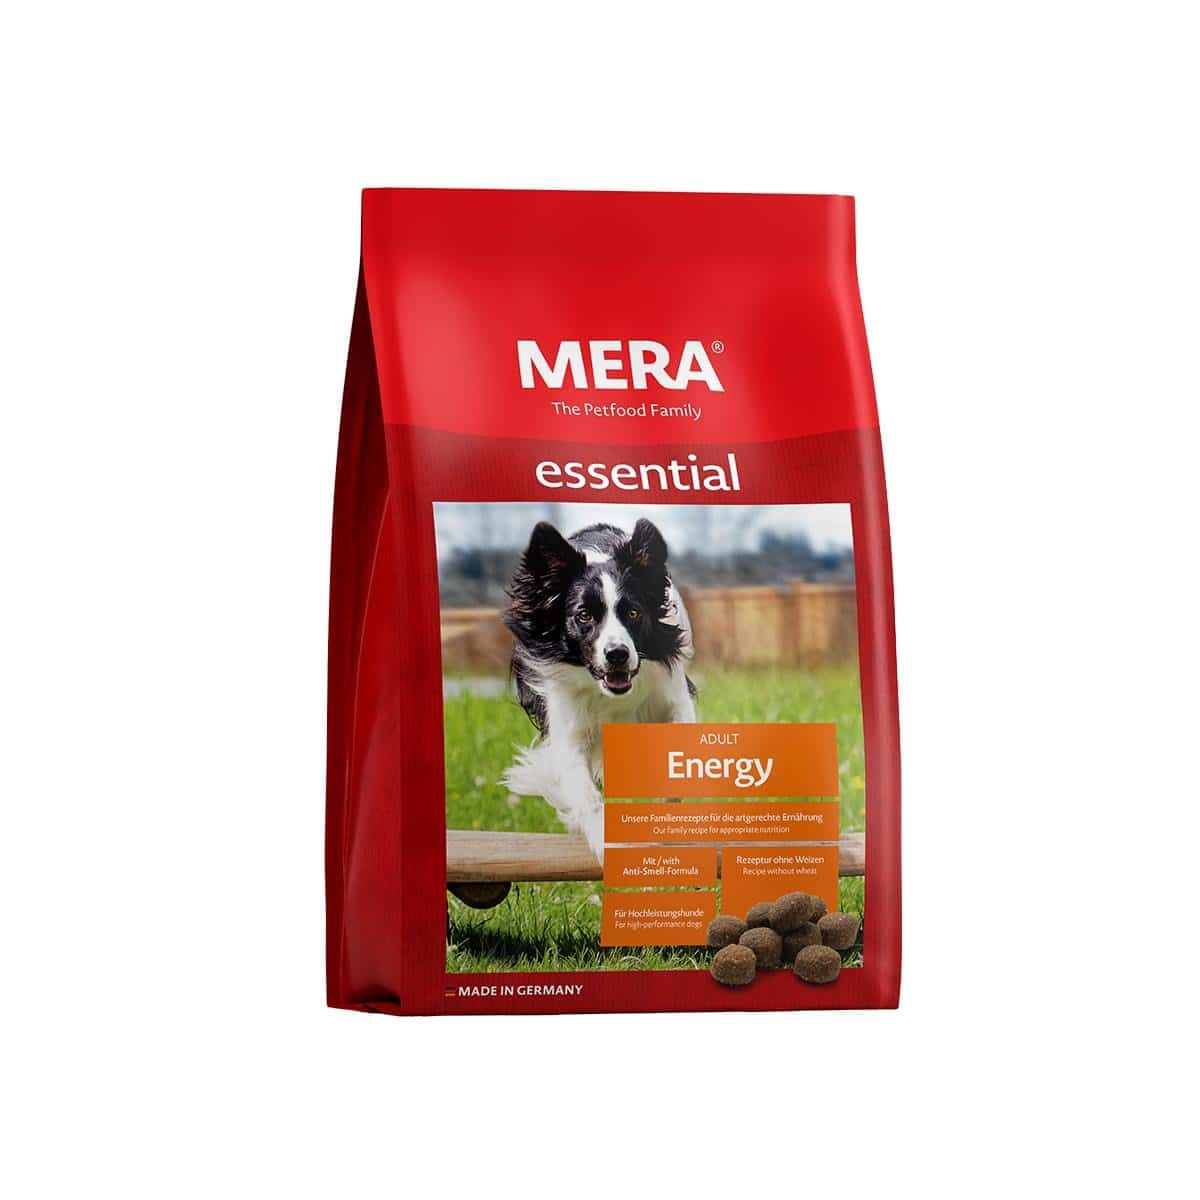 MERA essential Trockenfutter Energy 2x12